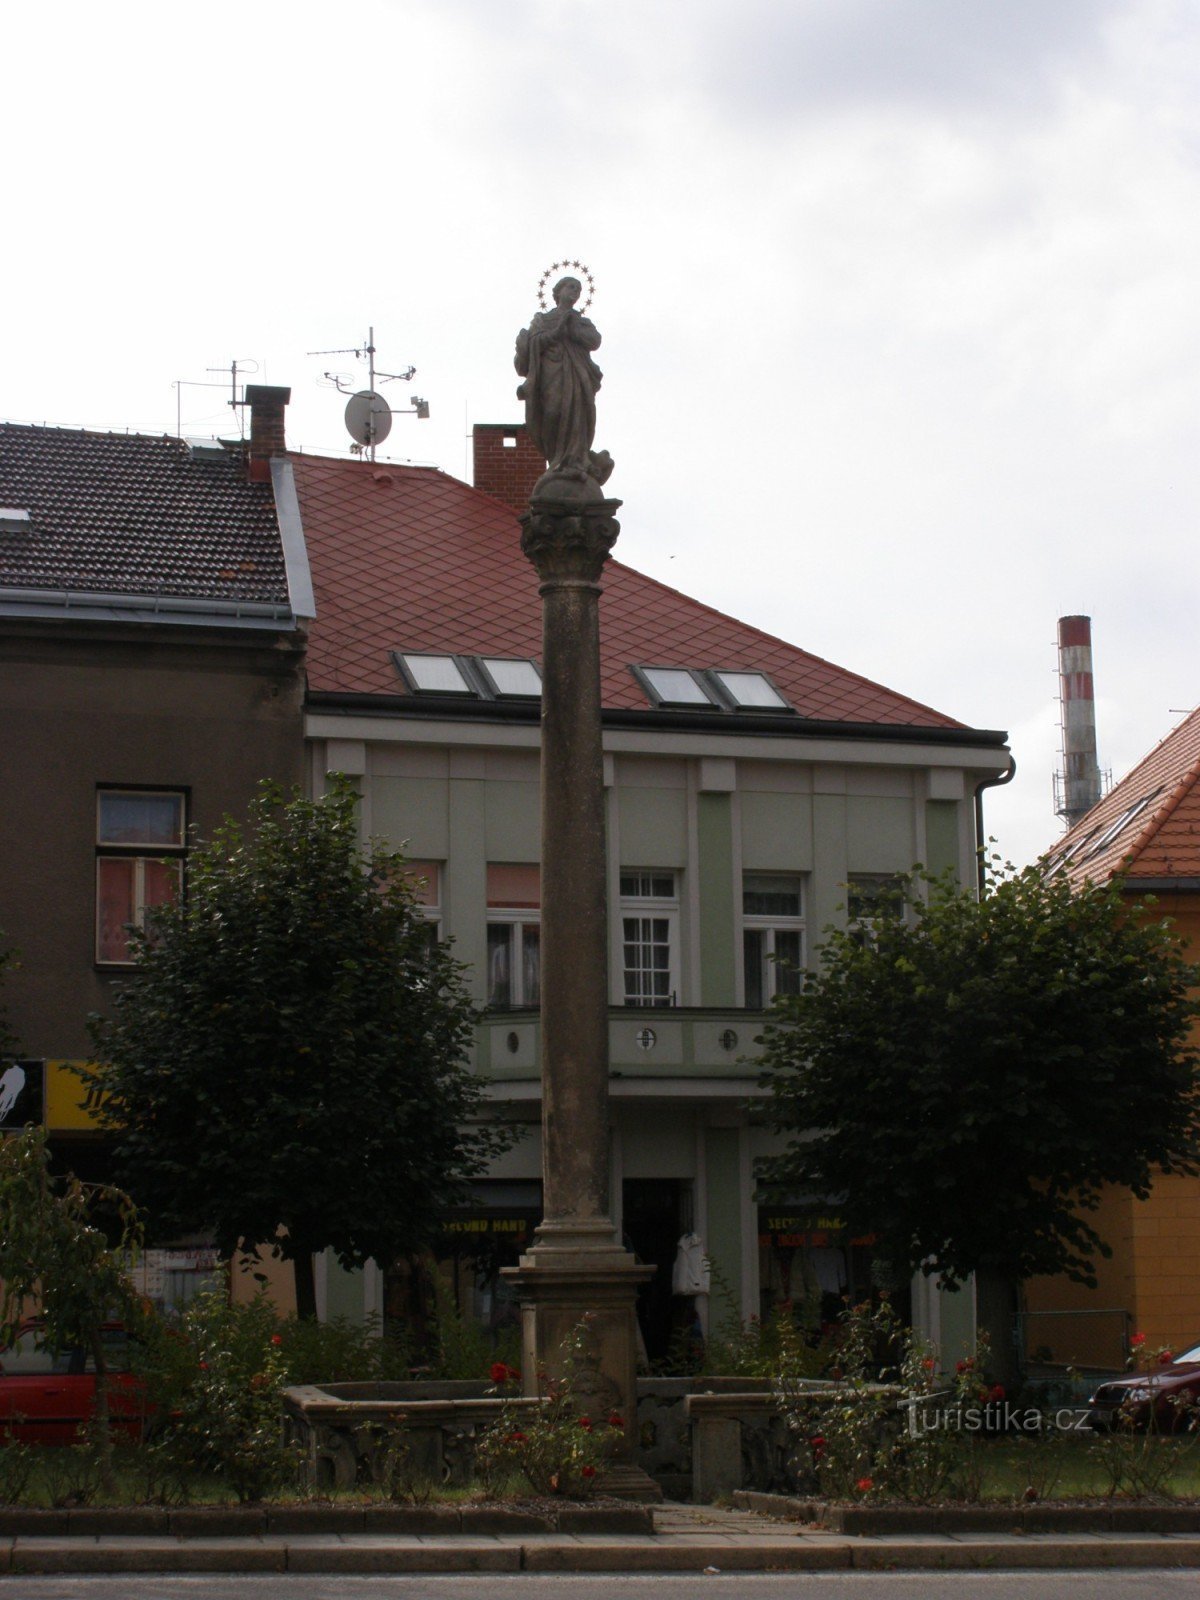 Vamberk - Husovo náměstí, a set of monuments